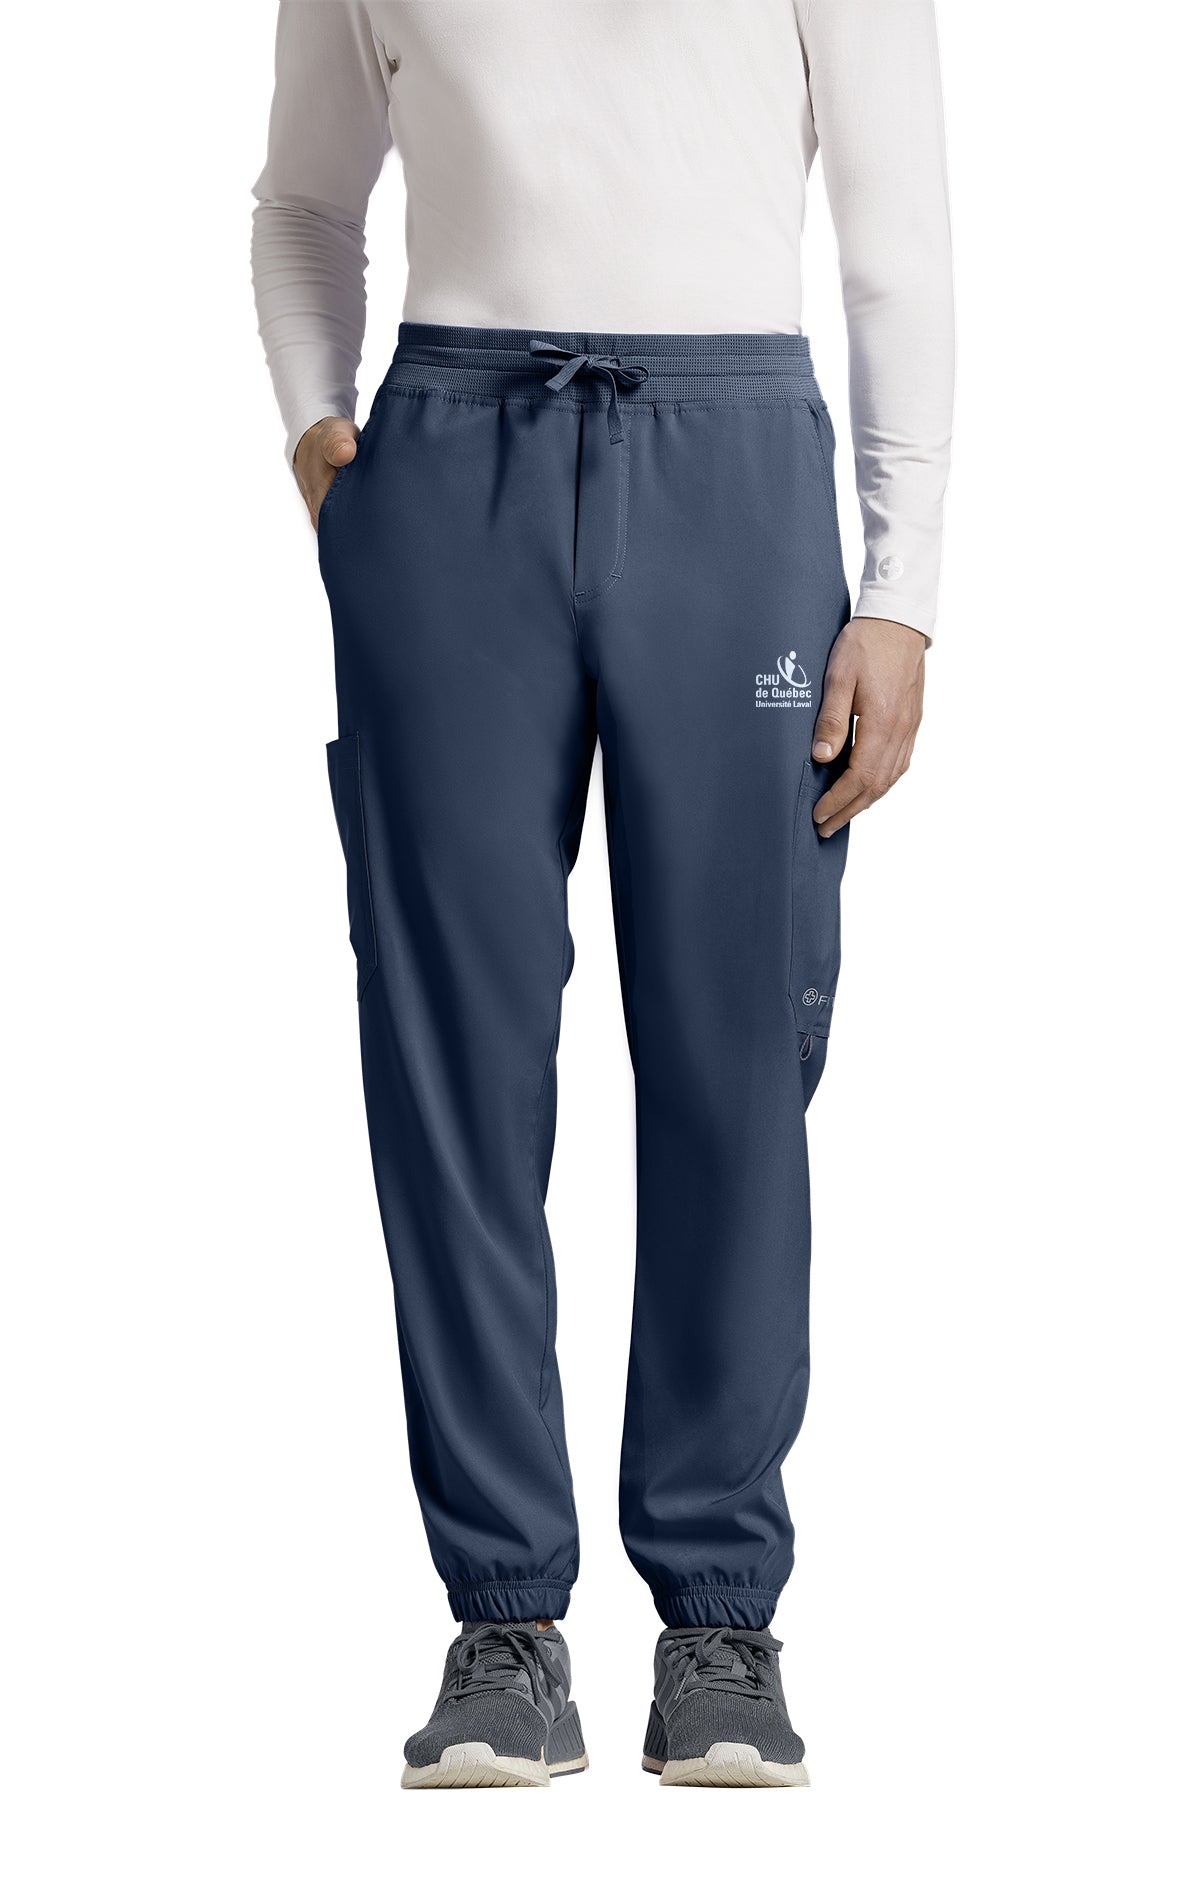 Pantalon pour infirmiers type Jogger Uniformes Sélect #223CHU navy